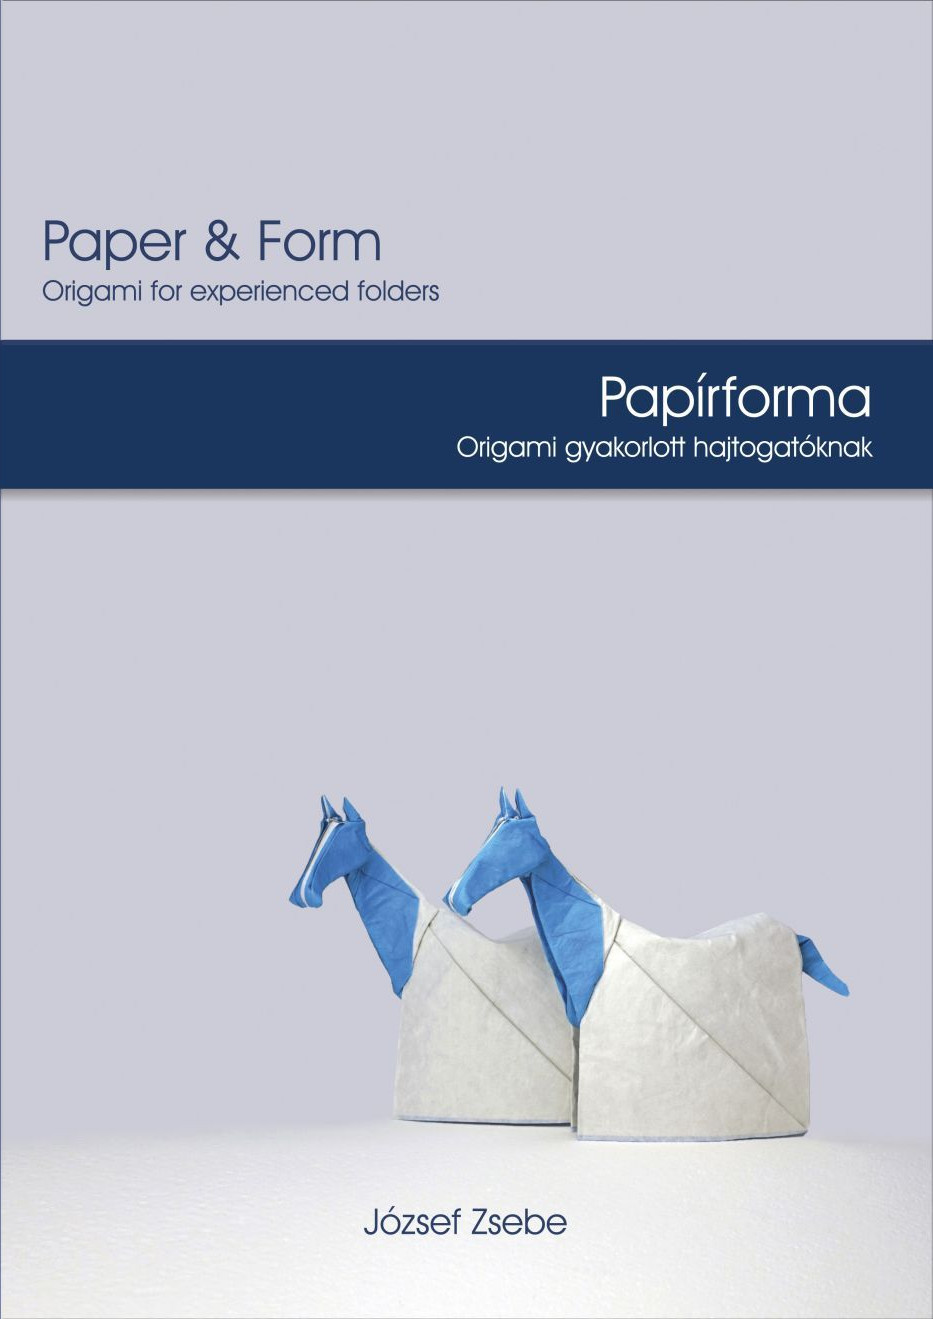 Paper & Form - Papírforma : page 66.